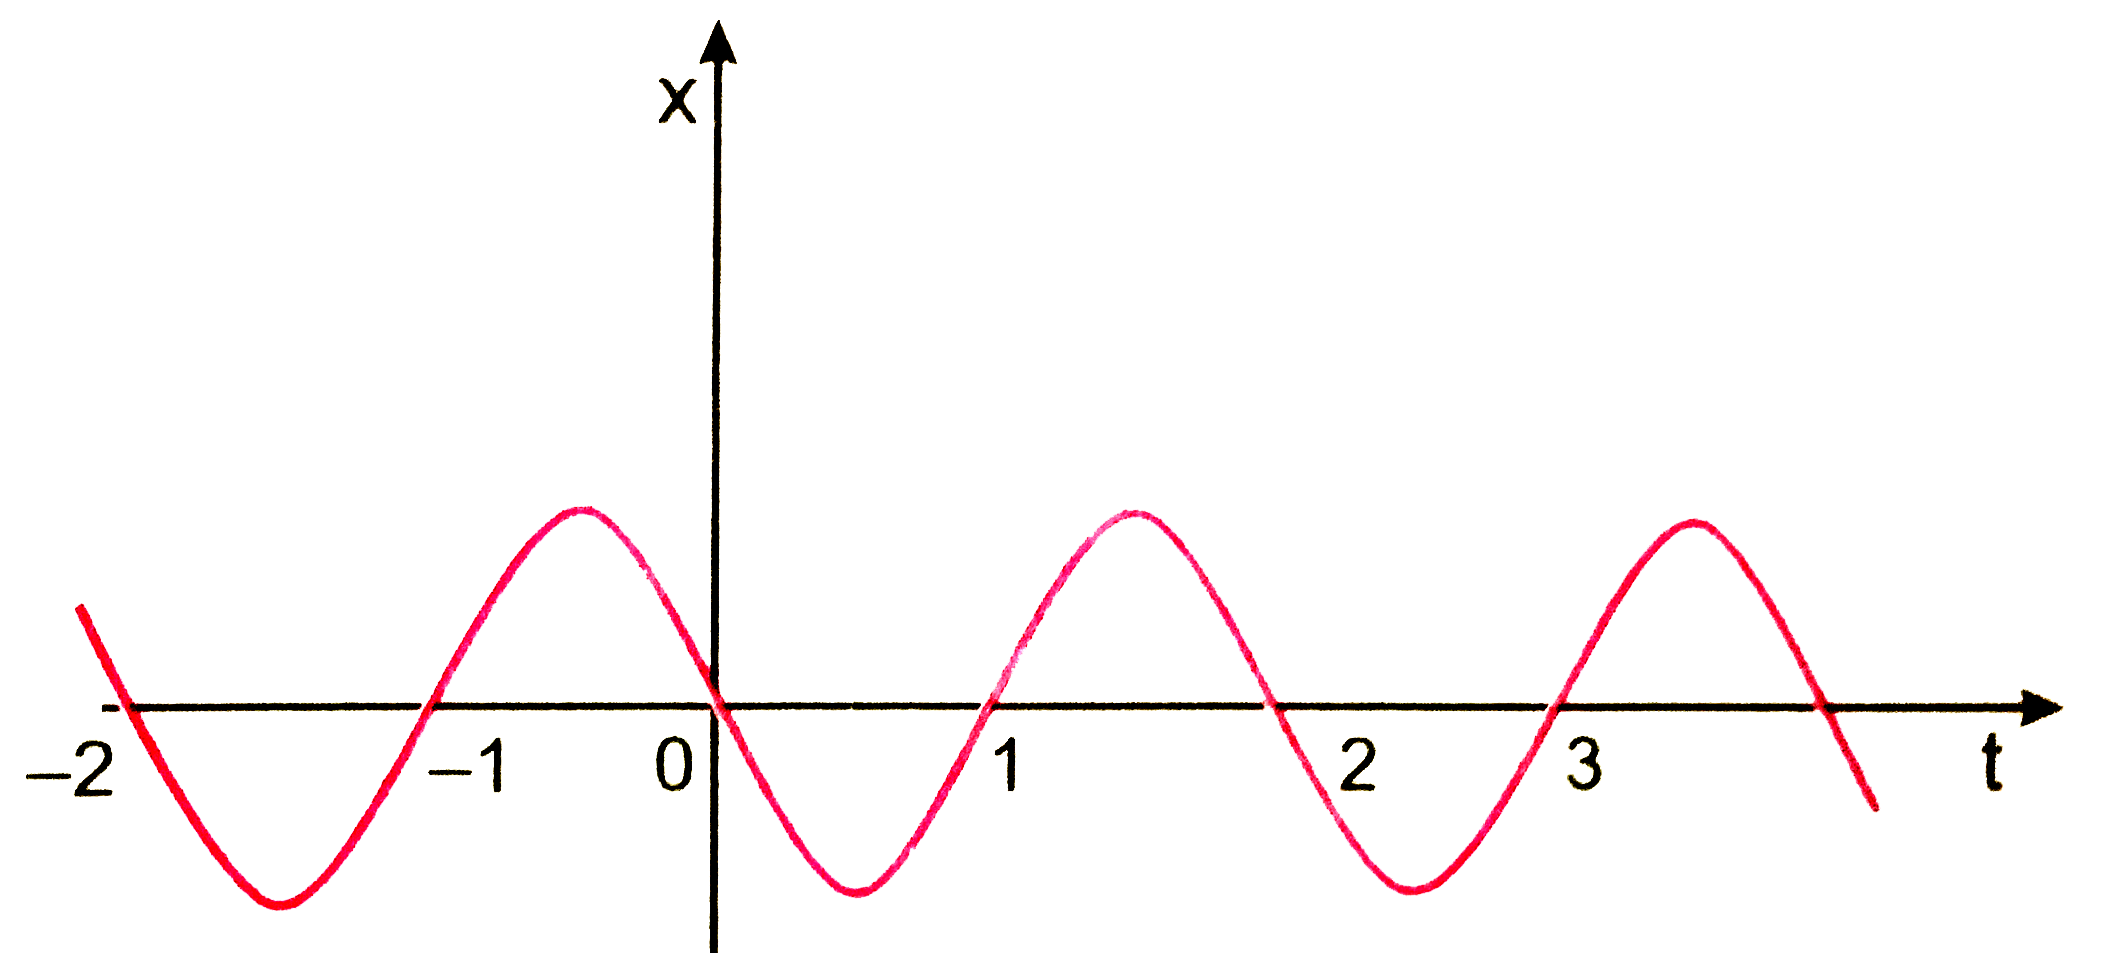 चित्र 3.54 में किसी कण की एकविमीय सरल आवर्ती गति के लिए x-t ग्राफ दिखाया गया है (इस गति के बारे में आप अध्याय 14 में पढ़ेंगे) समय t=1*2 सेकण्ड पर कण के स्थिति वेग व त्वरण के चिन्ह क्या होंगे ?